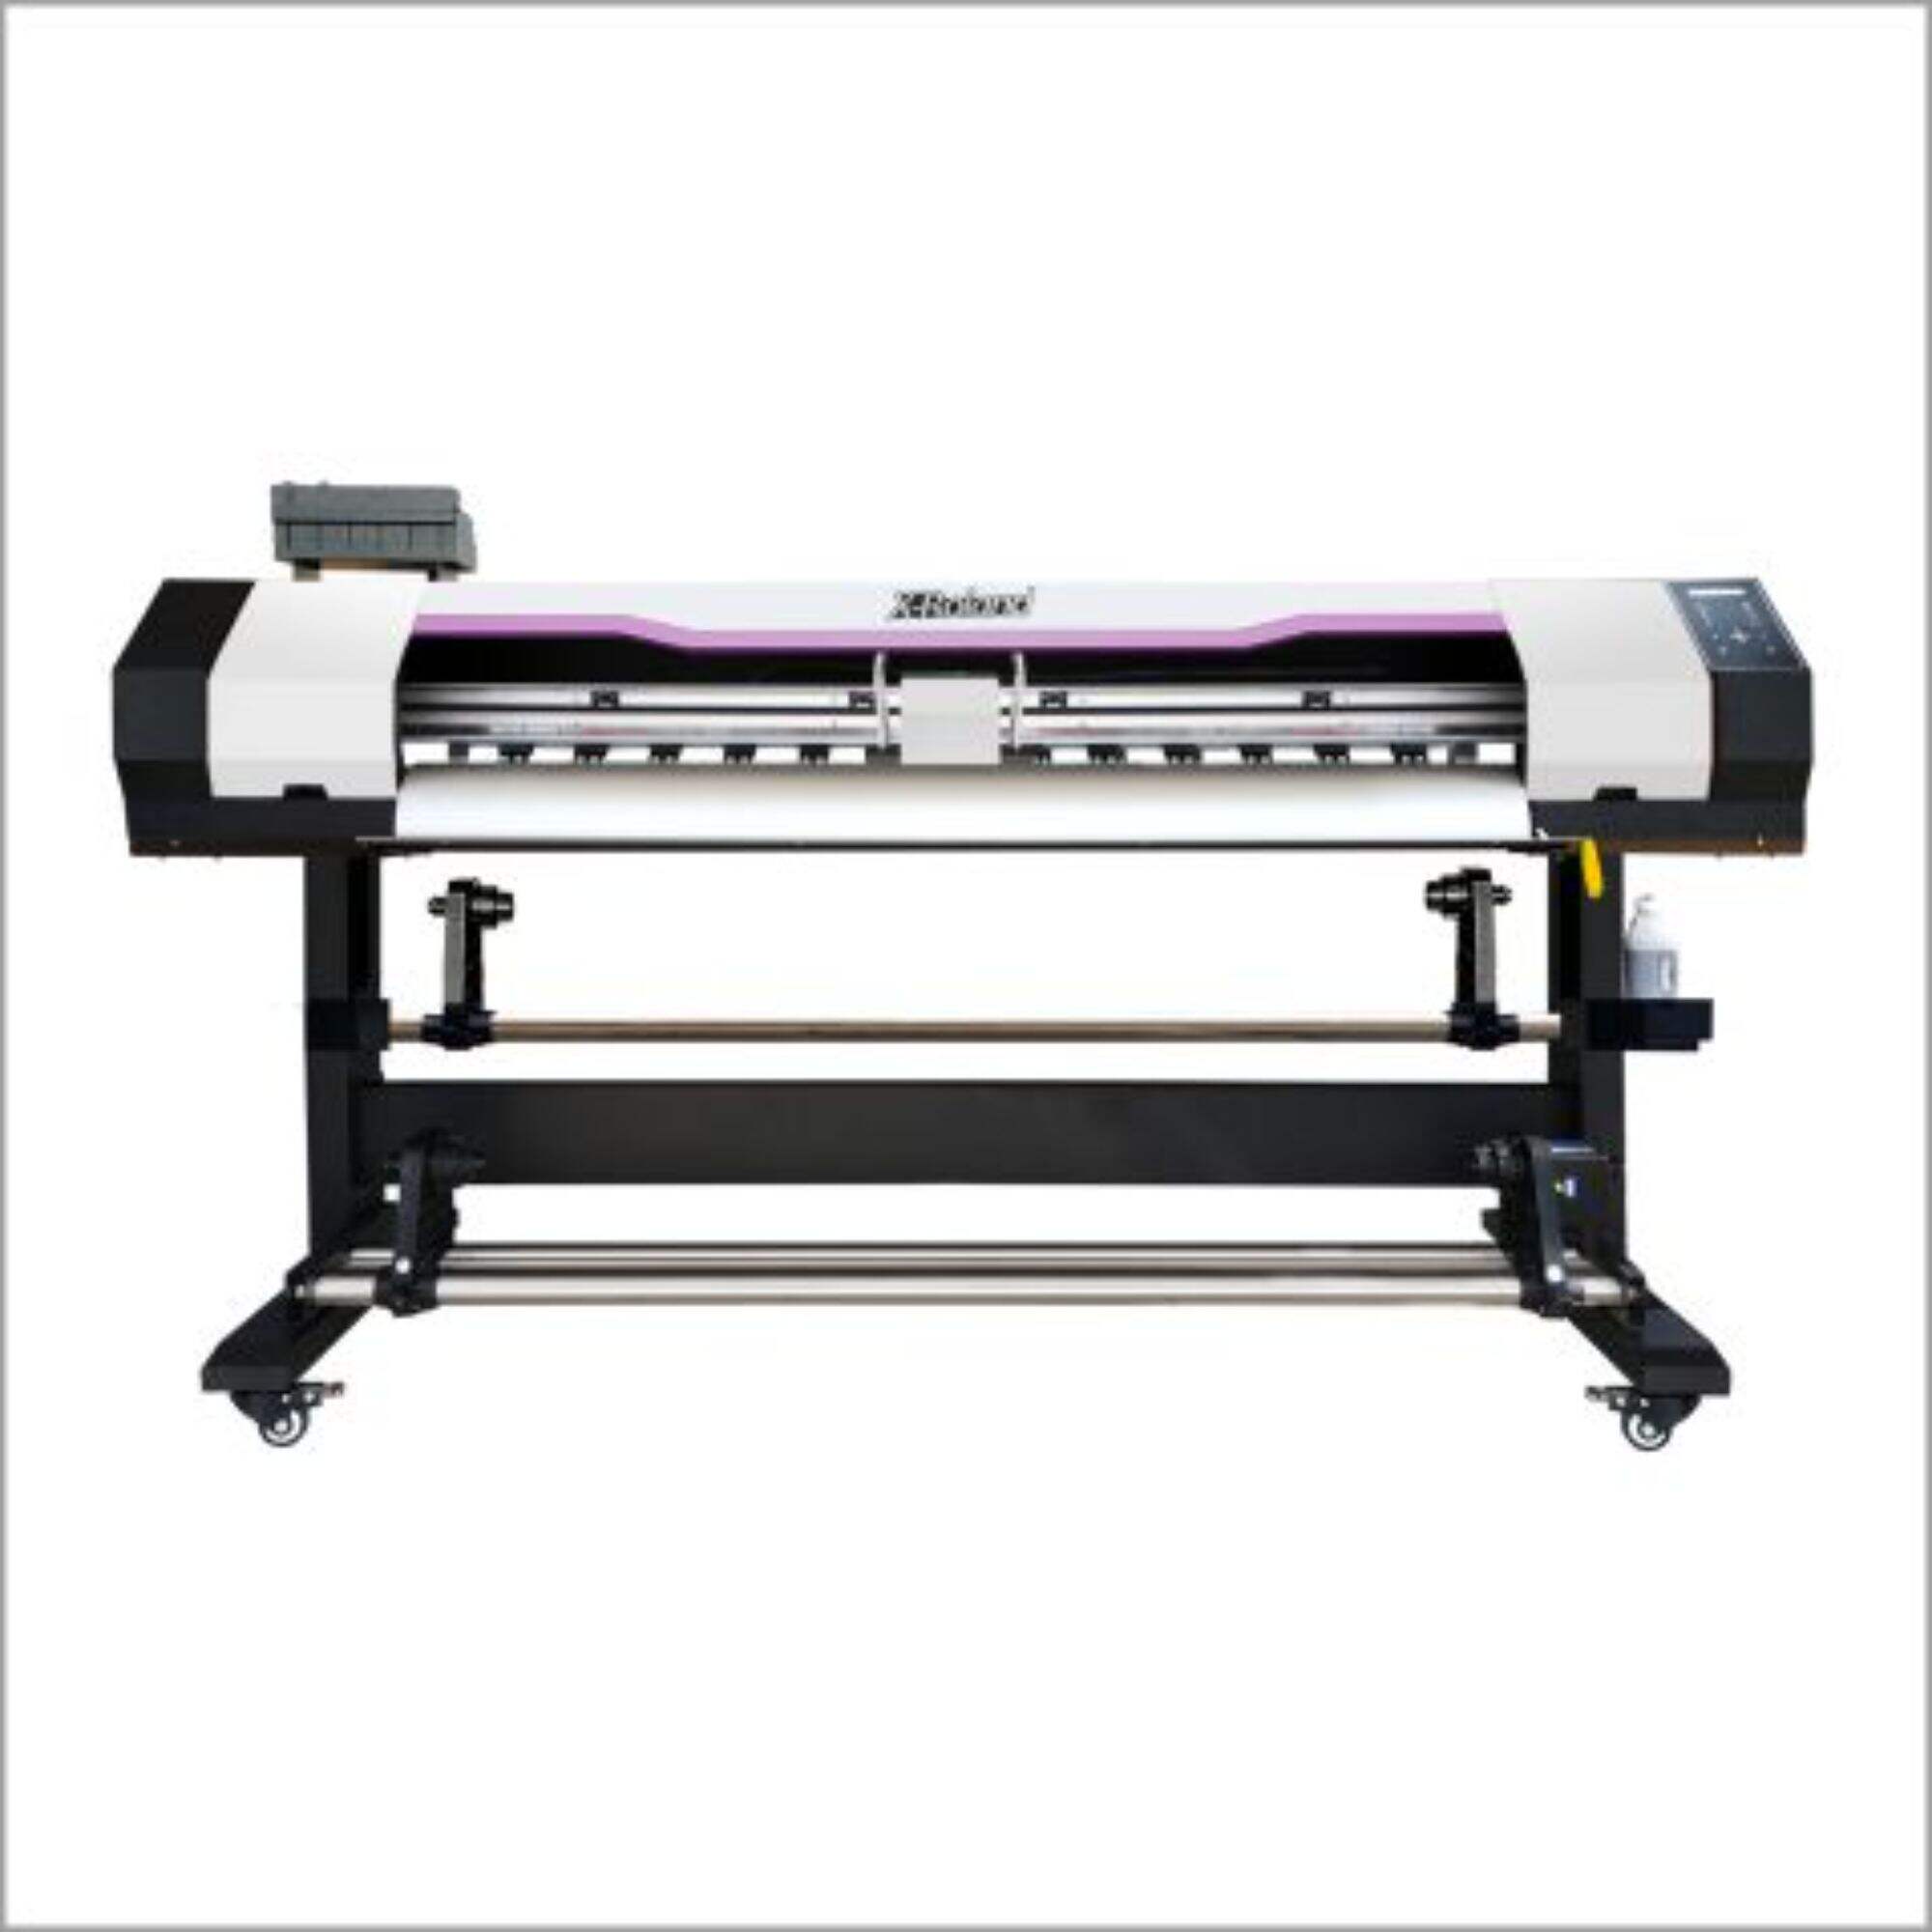 XL-1680S, 1850S UV printer